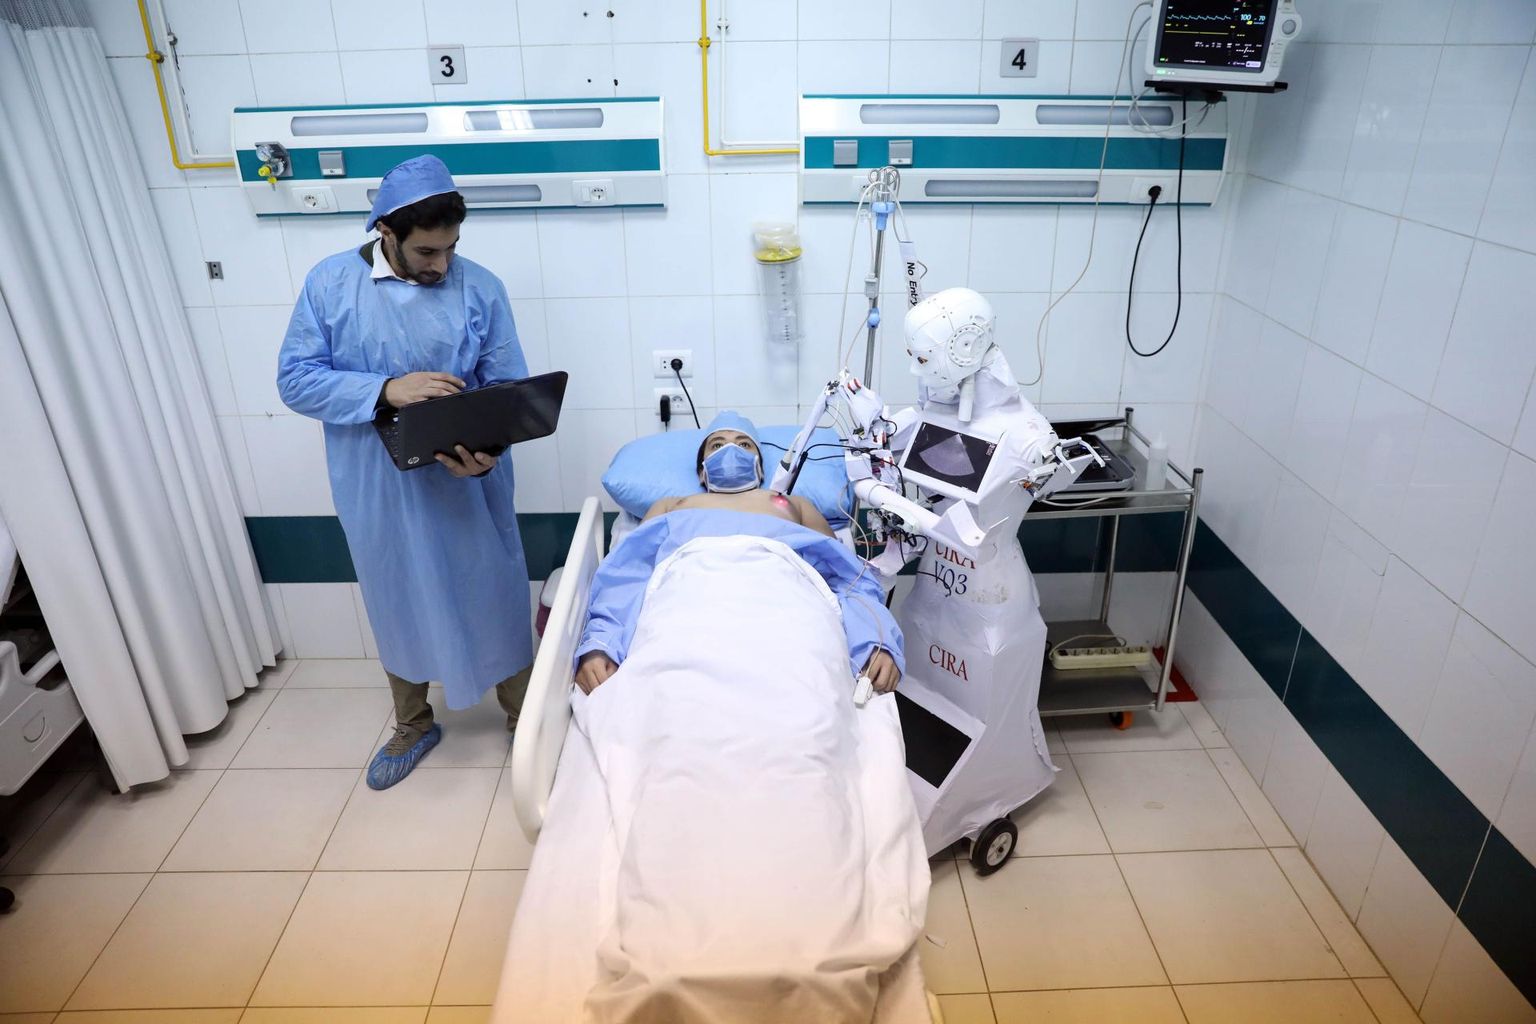 Egiptuses Tanta linnahaiglas tegeleb Cira-3 nimeline robot-õde vabatahtliku patsiendi südame ultraheliuuringuga. Praegu assisteerib roboti tööd veel selle leiutaja, 27-aastane mehaanikainsener Mahmoud el-Komy. 